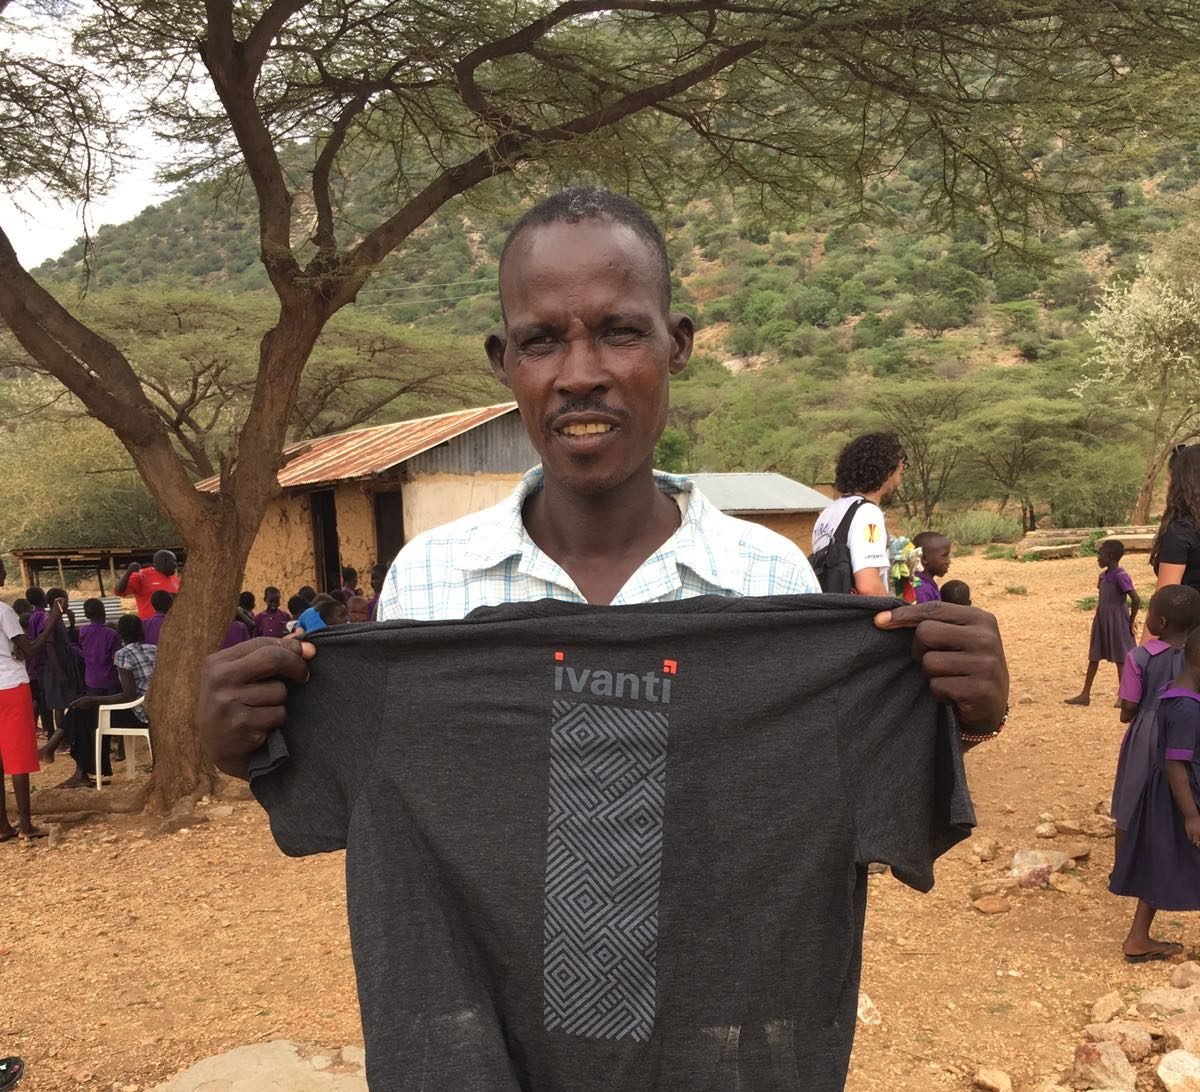 Kenyan holding Ivanti shirt